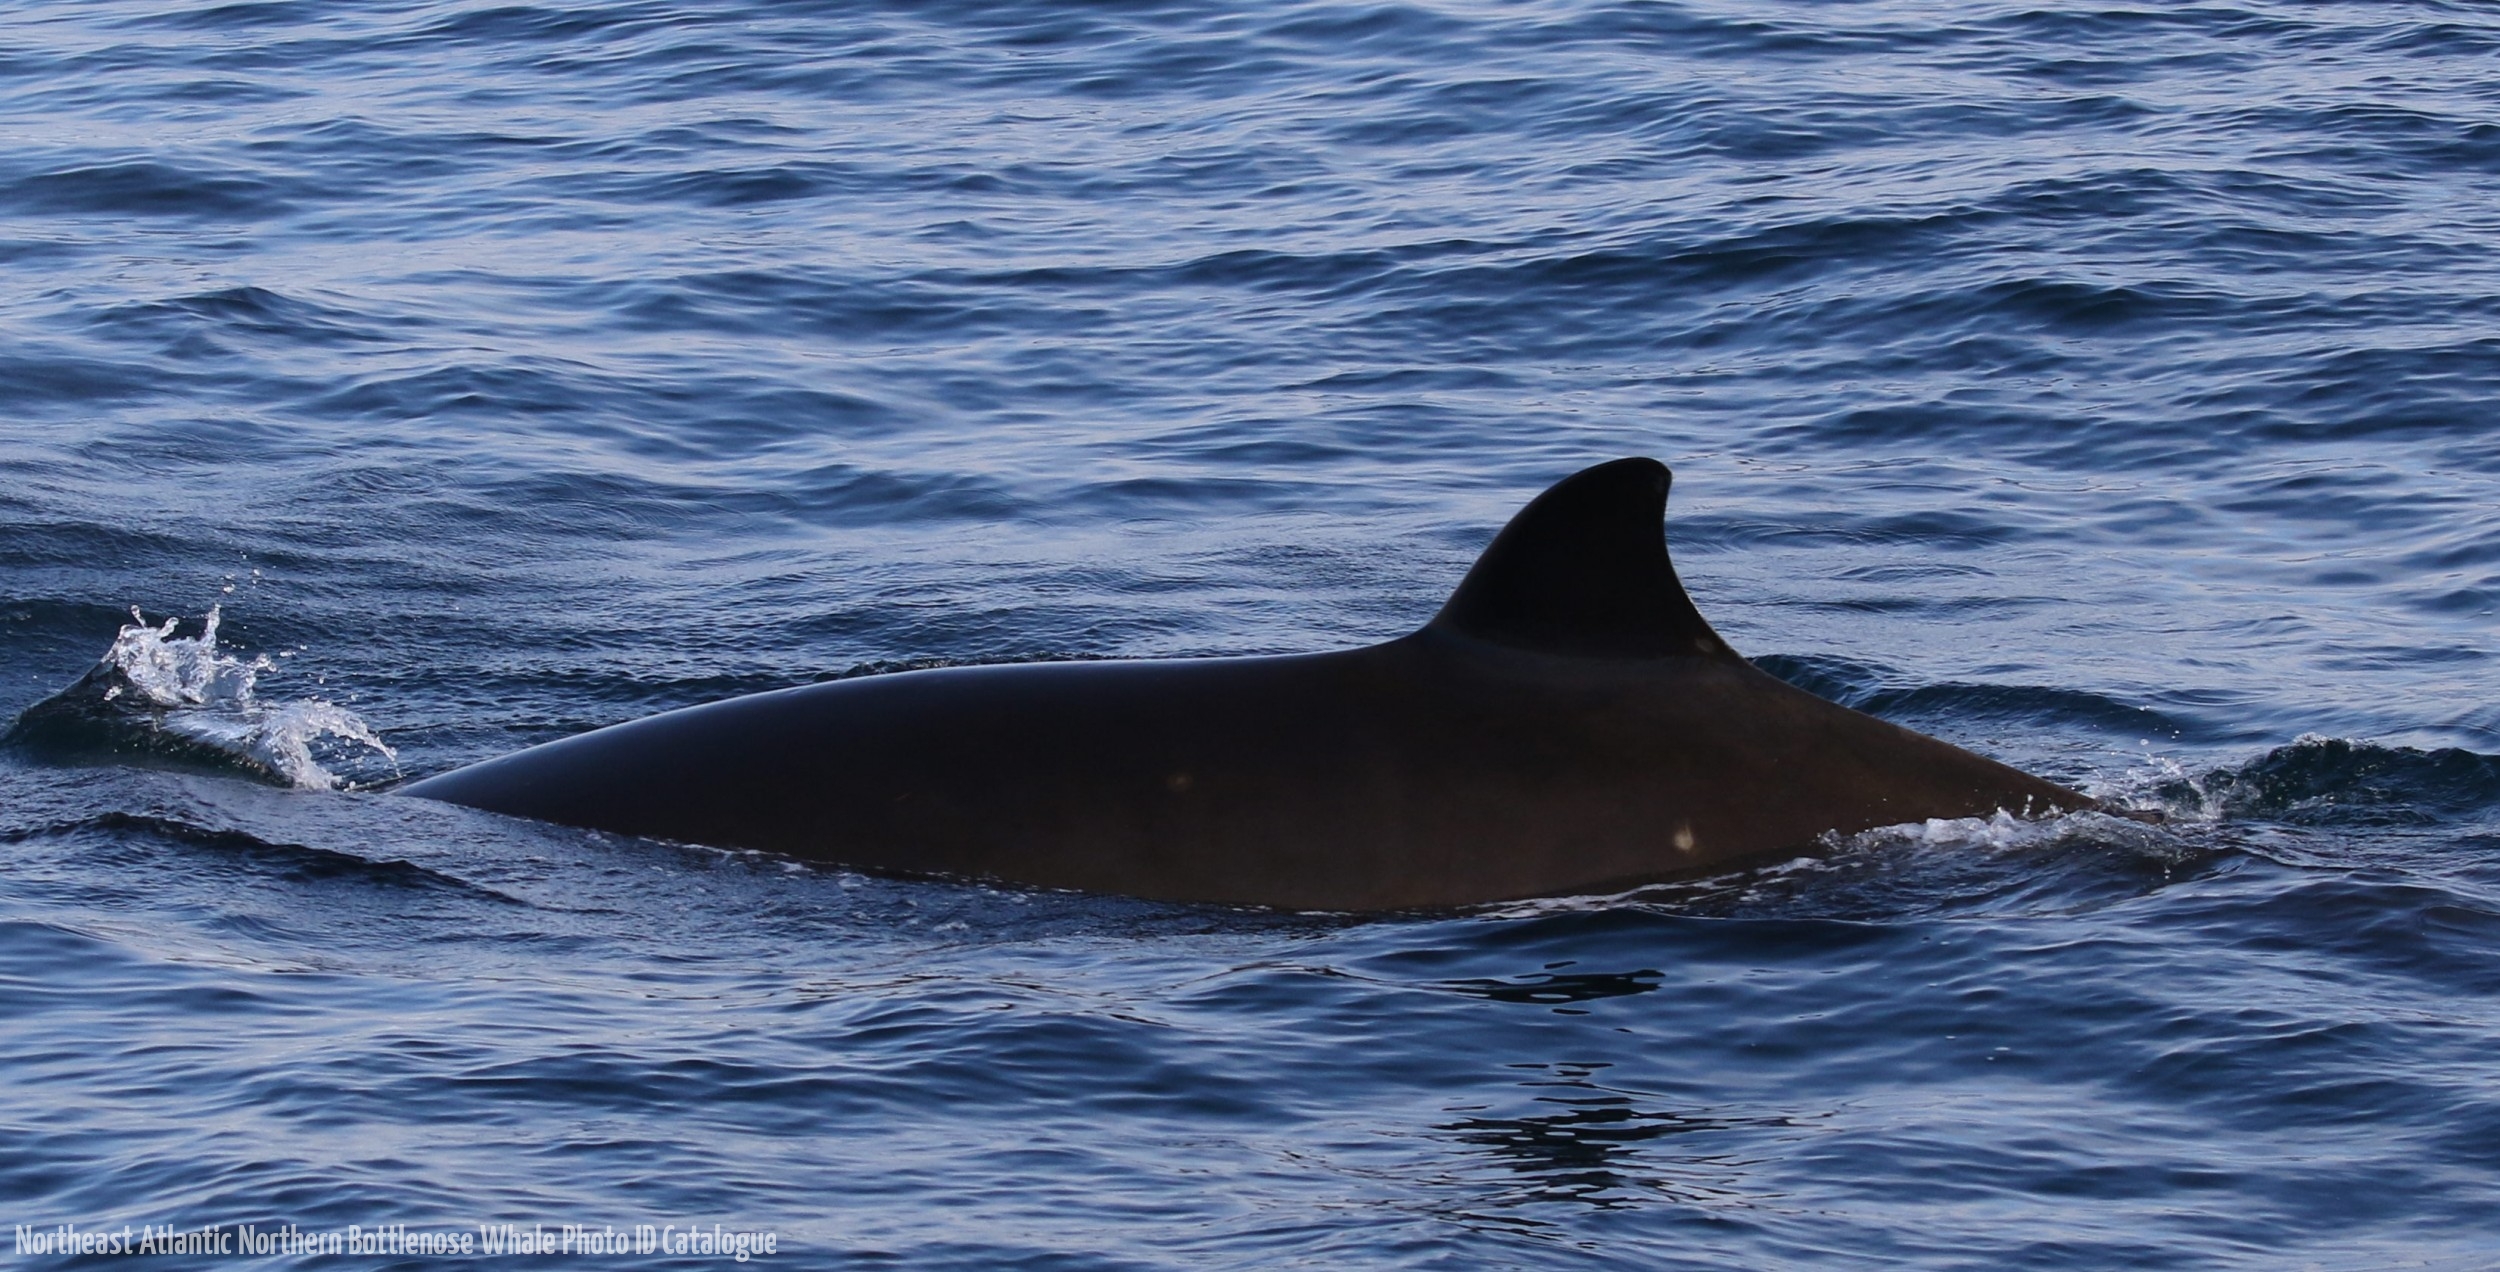 Whale ID: 0211,  Date taken: 21-06-2016,  Photographer: Eilidh Siegal